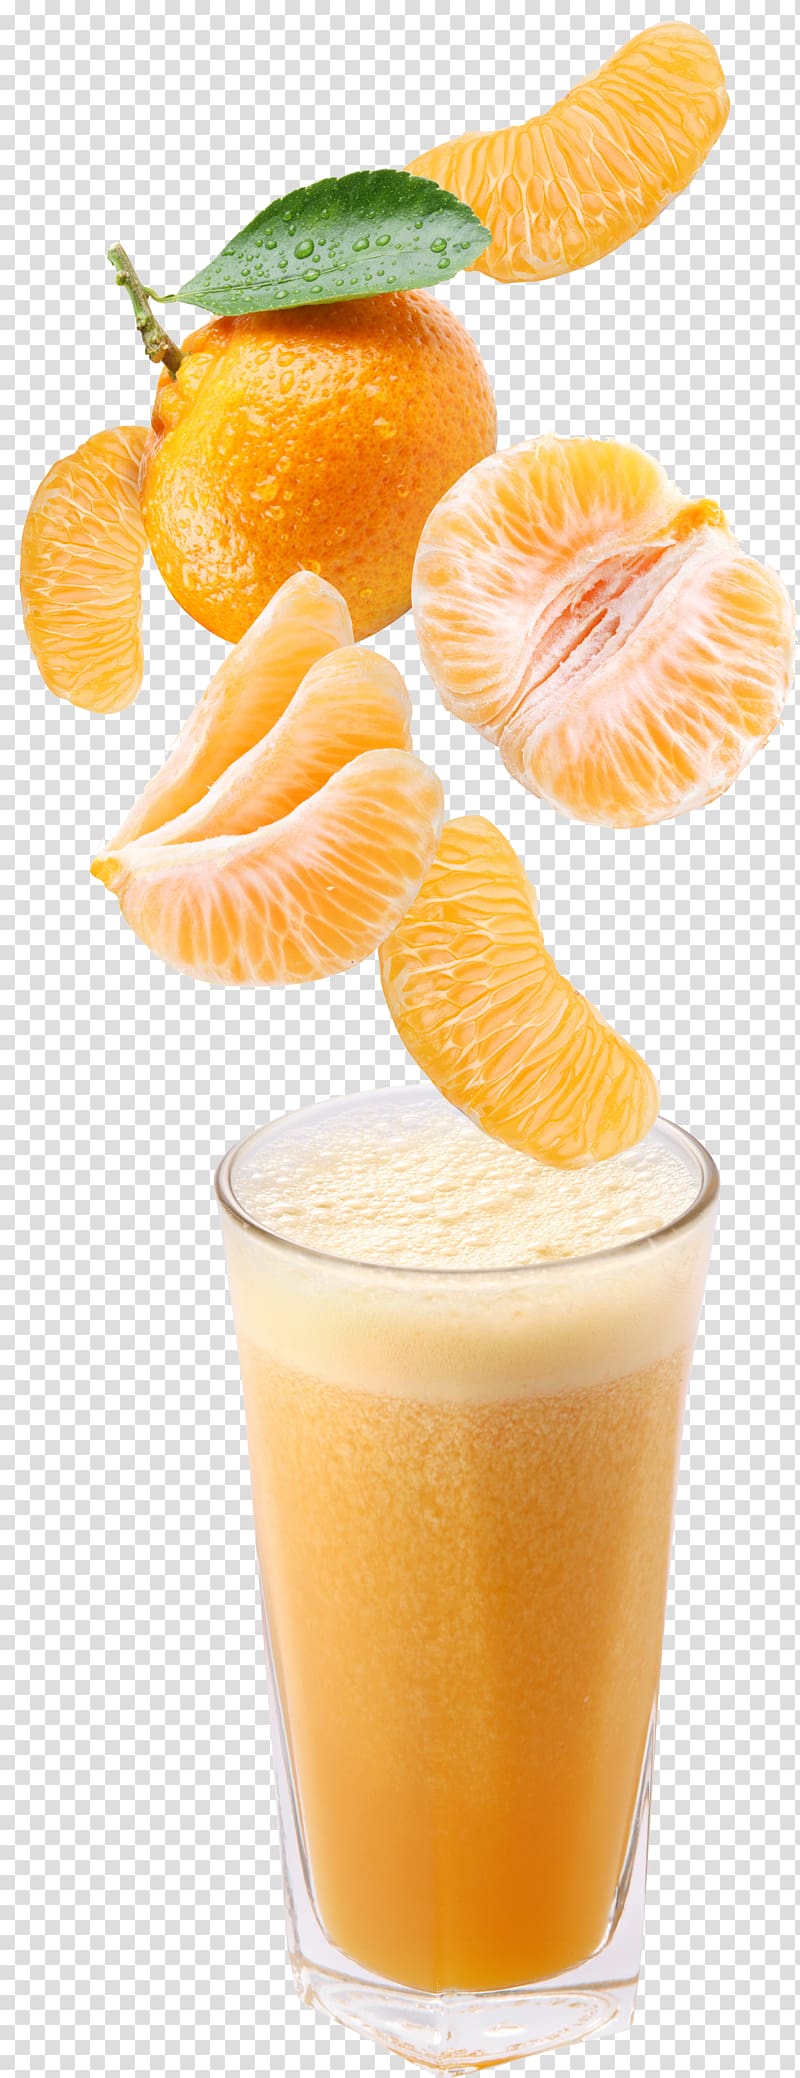 Orange drink Orange juice Cocktail Fruit, juice transparent background PNG clipart